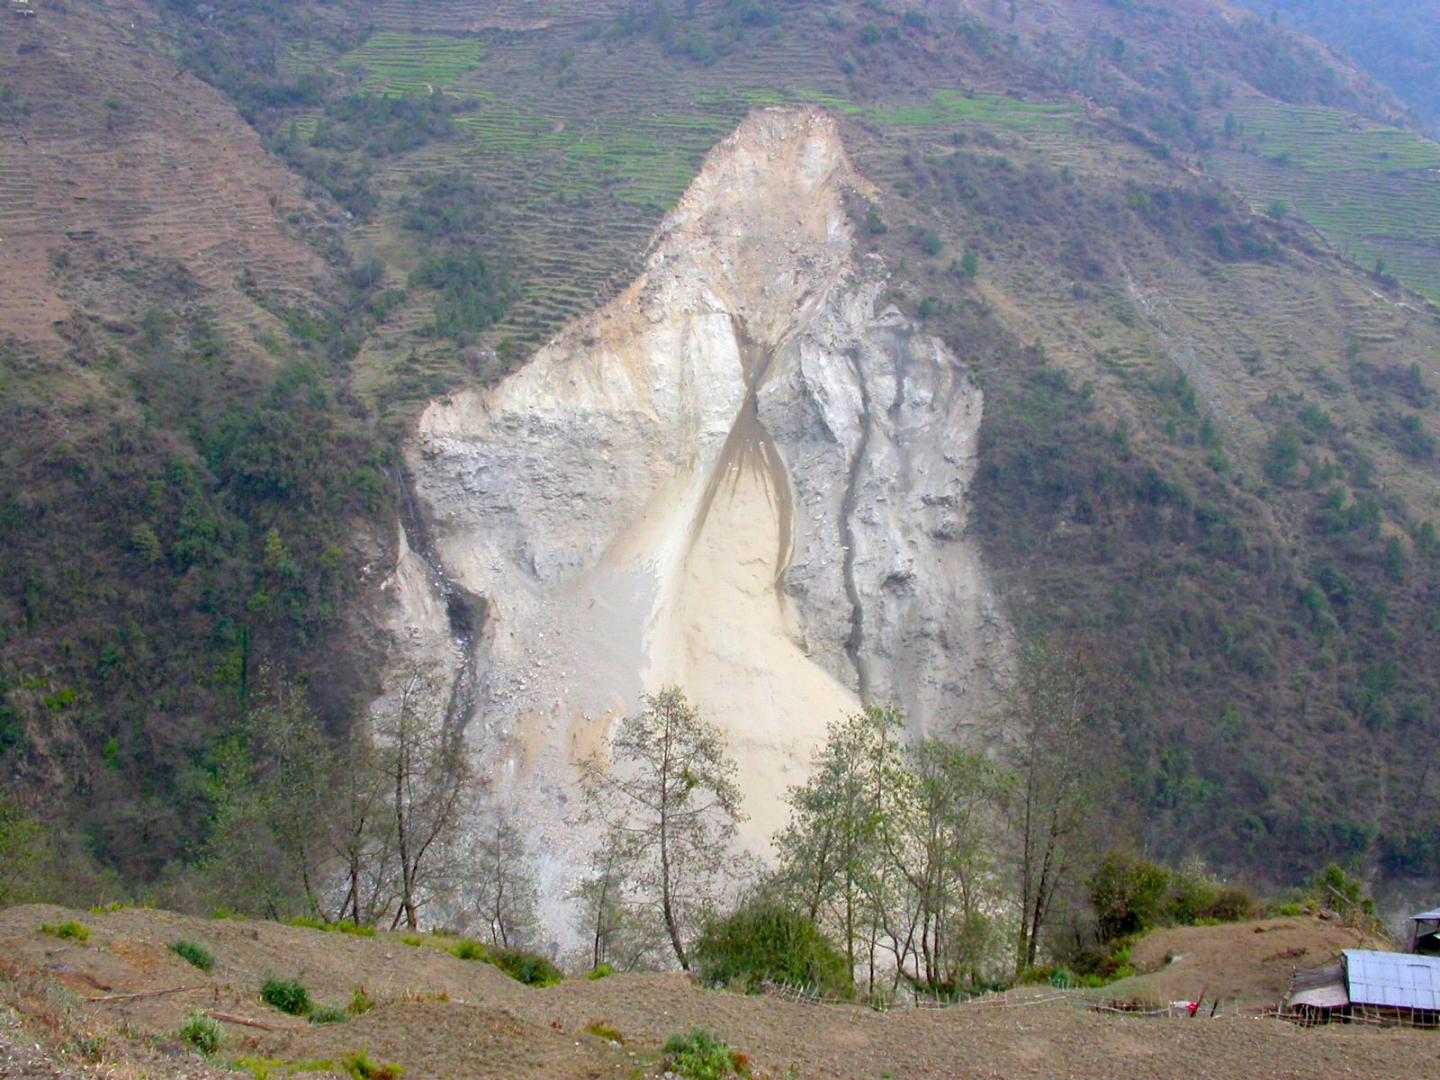 Fresh Landslide near Kimrong in the Himalaya